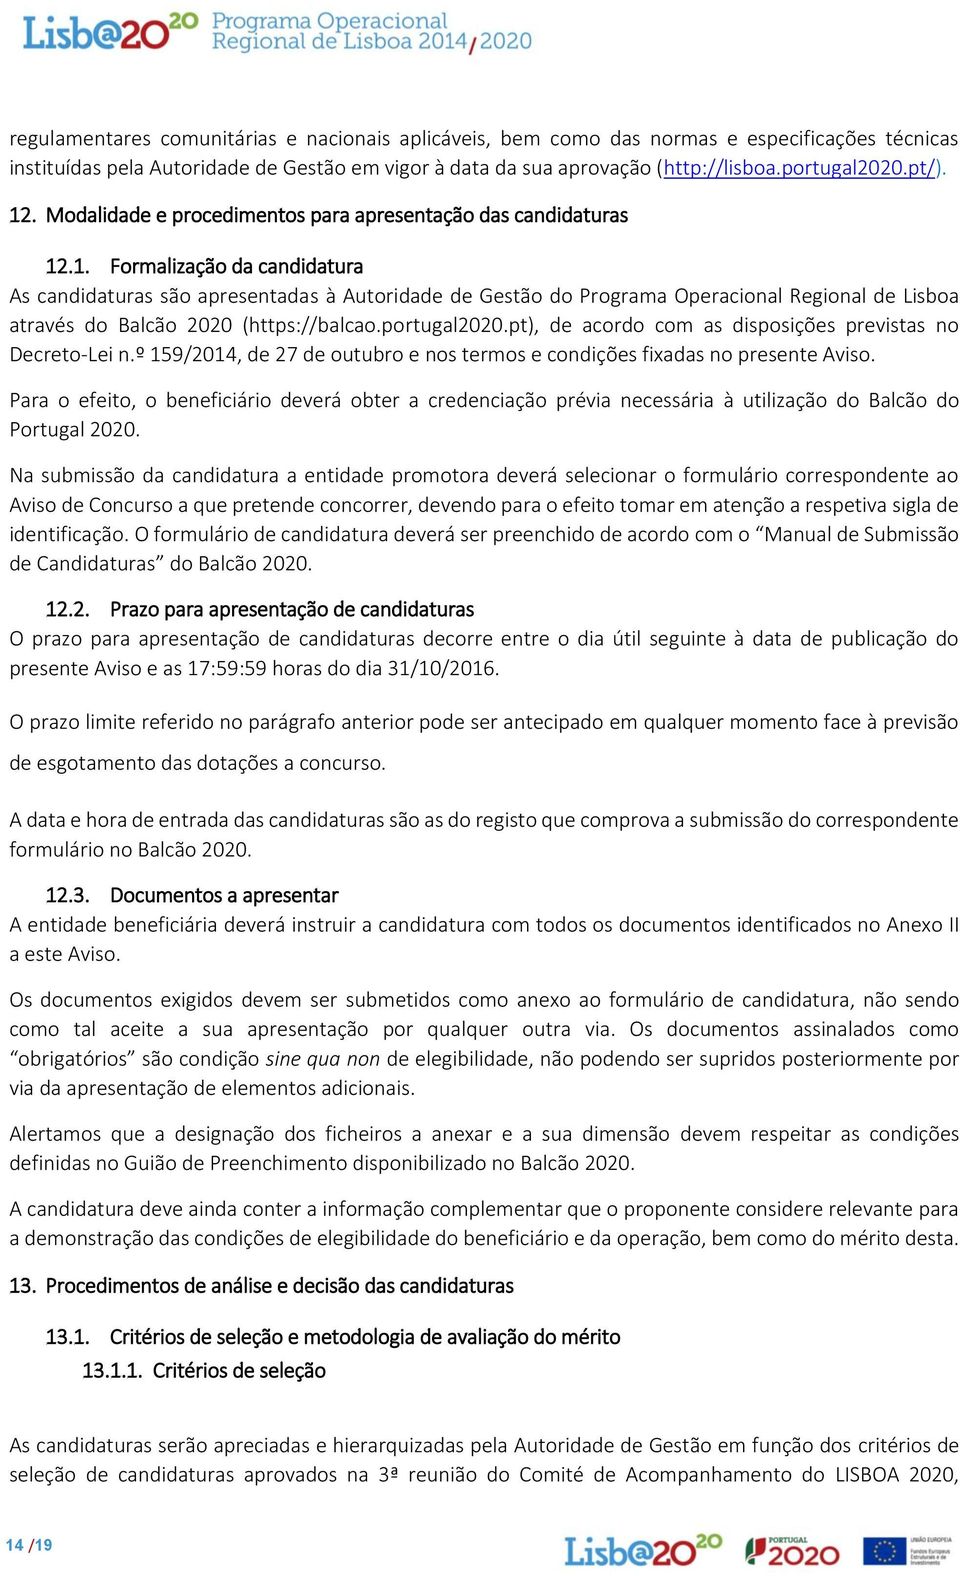 portugal2020.pt), de acordo com as disposições previstas no Decreto-Lei n.º 159/2014, de 27 de outubro e nos termos e condições fixadas no presente Aviso.